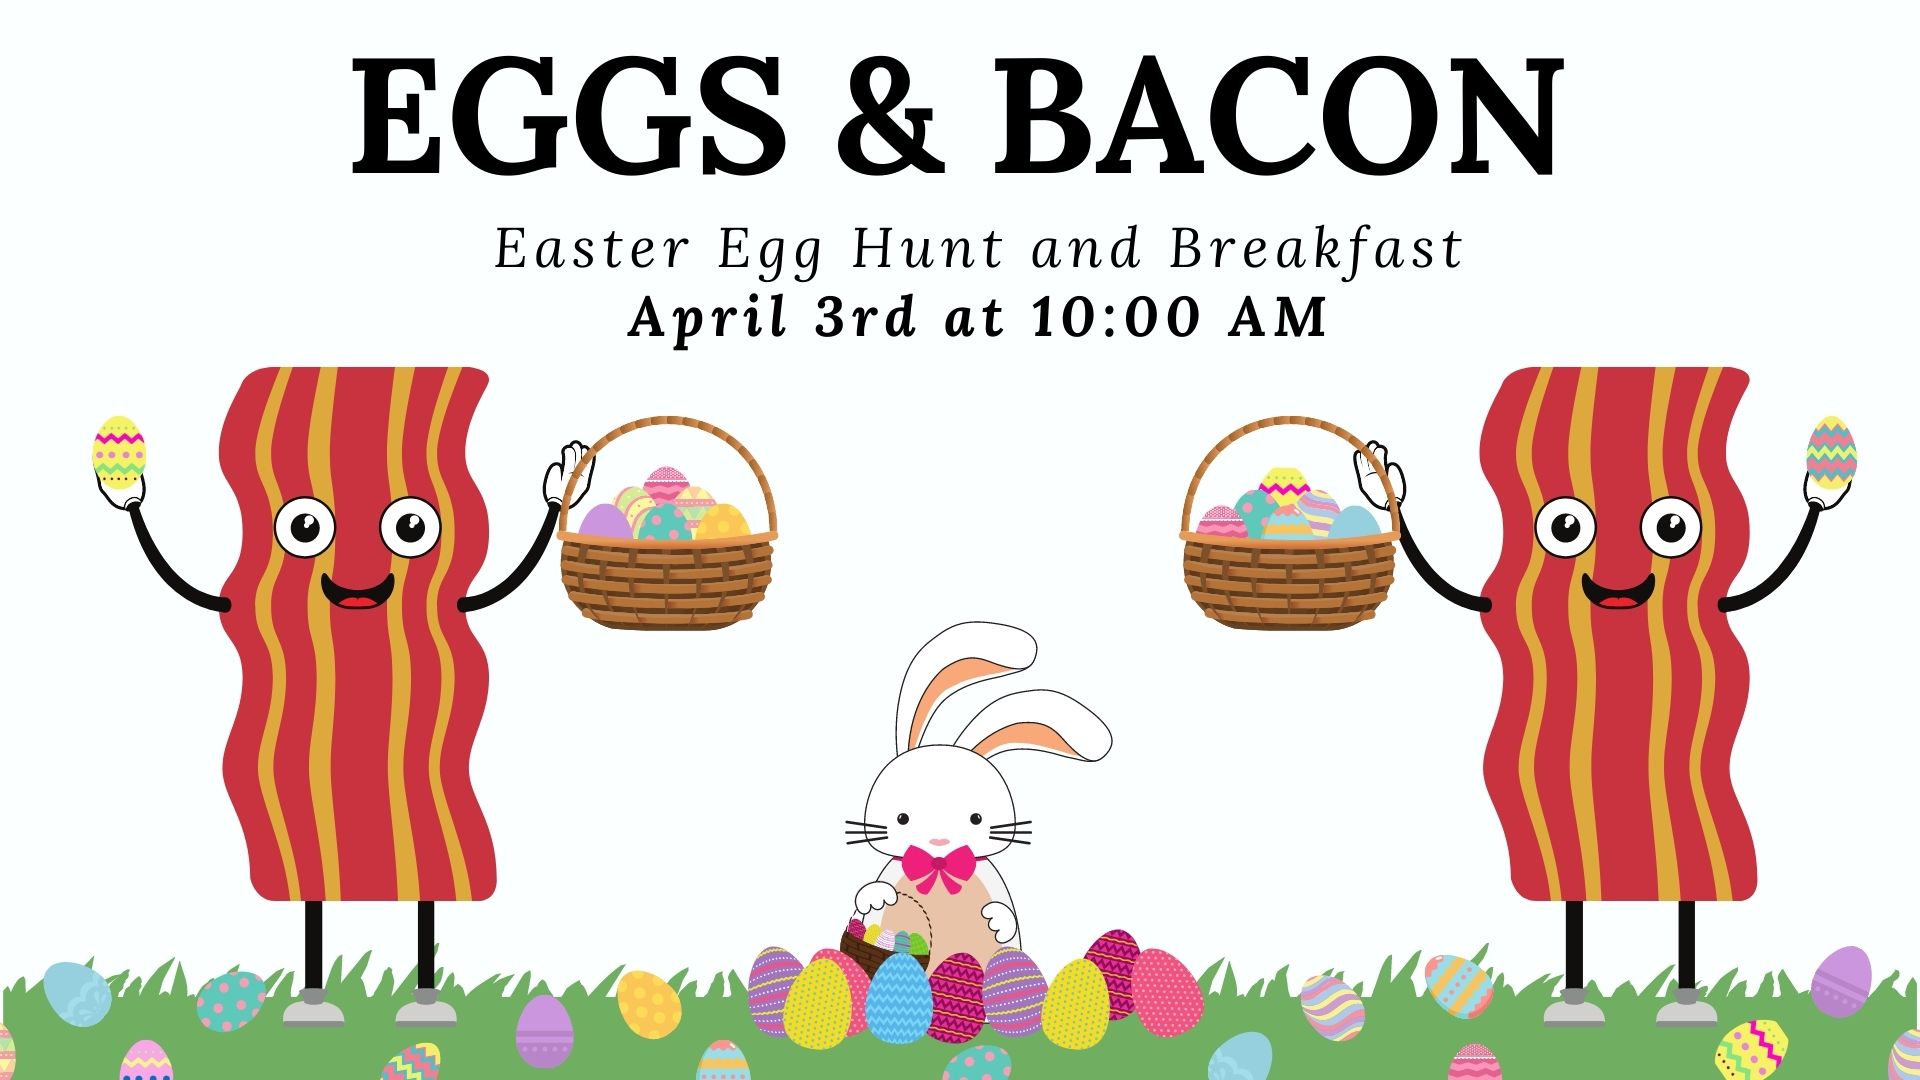 Eggs & Bacon Easter Egg Hunt